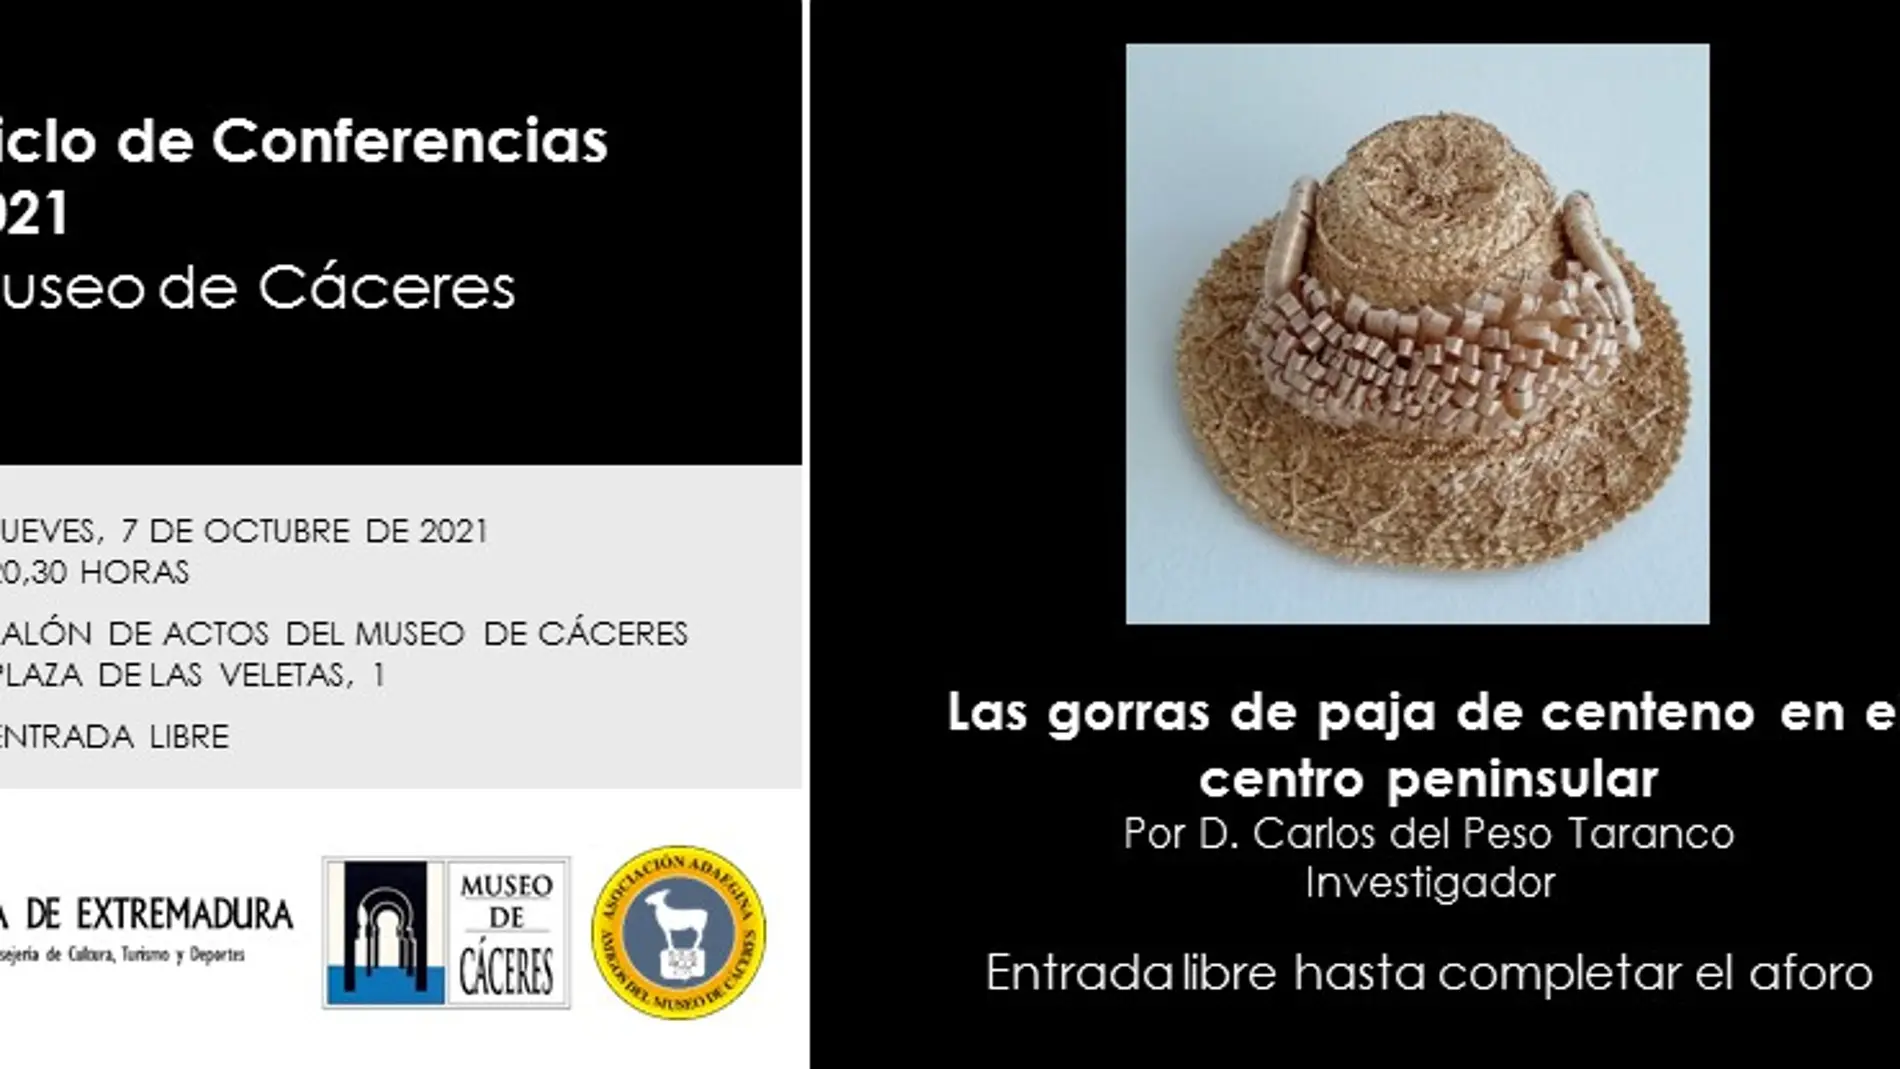 El Museo de Cáceres retoma las conferencias tras año y medio de parón por la pandemia